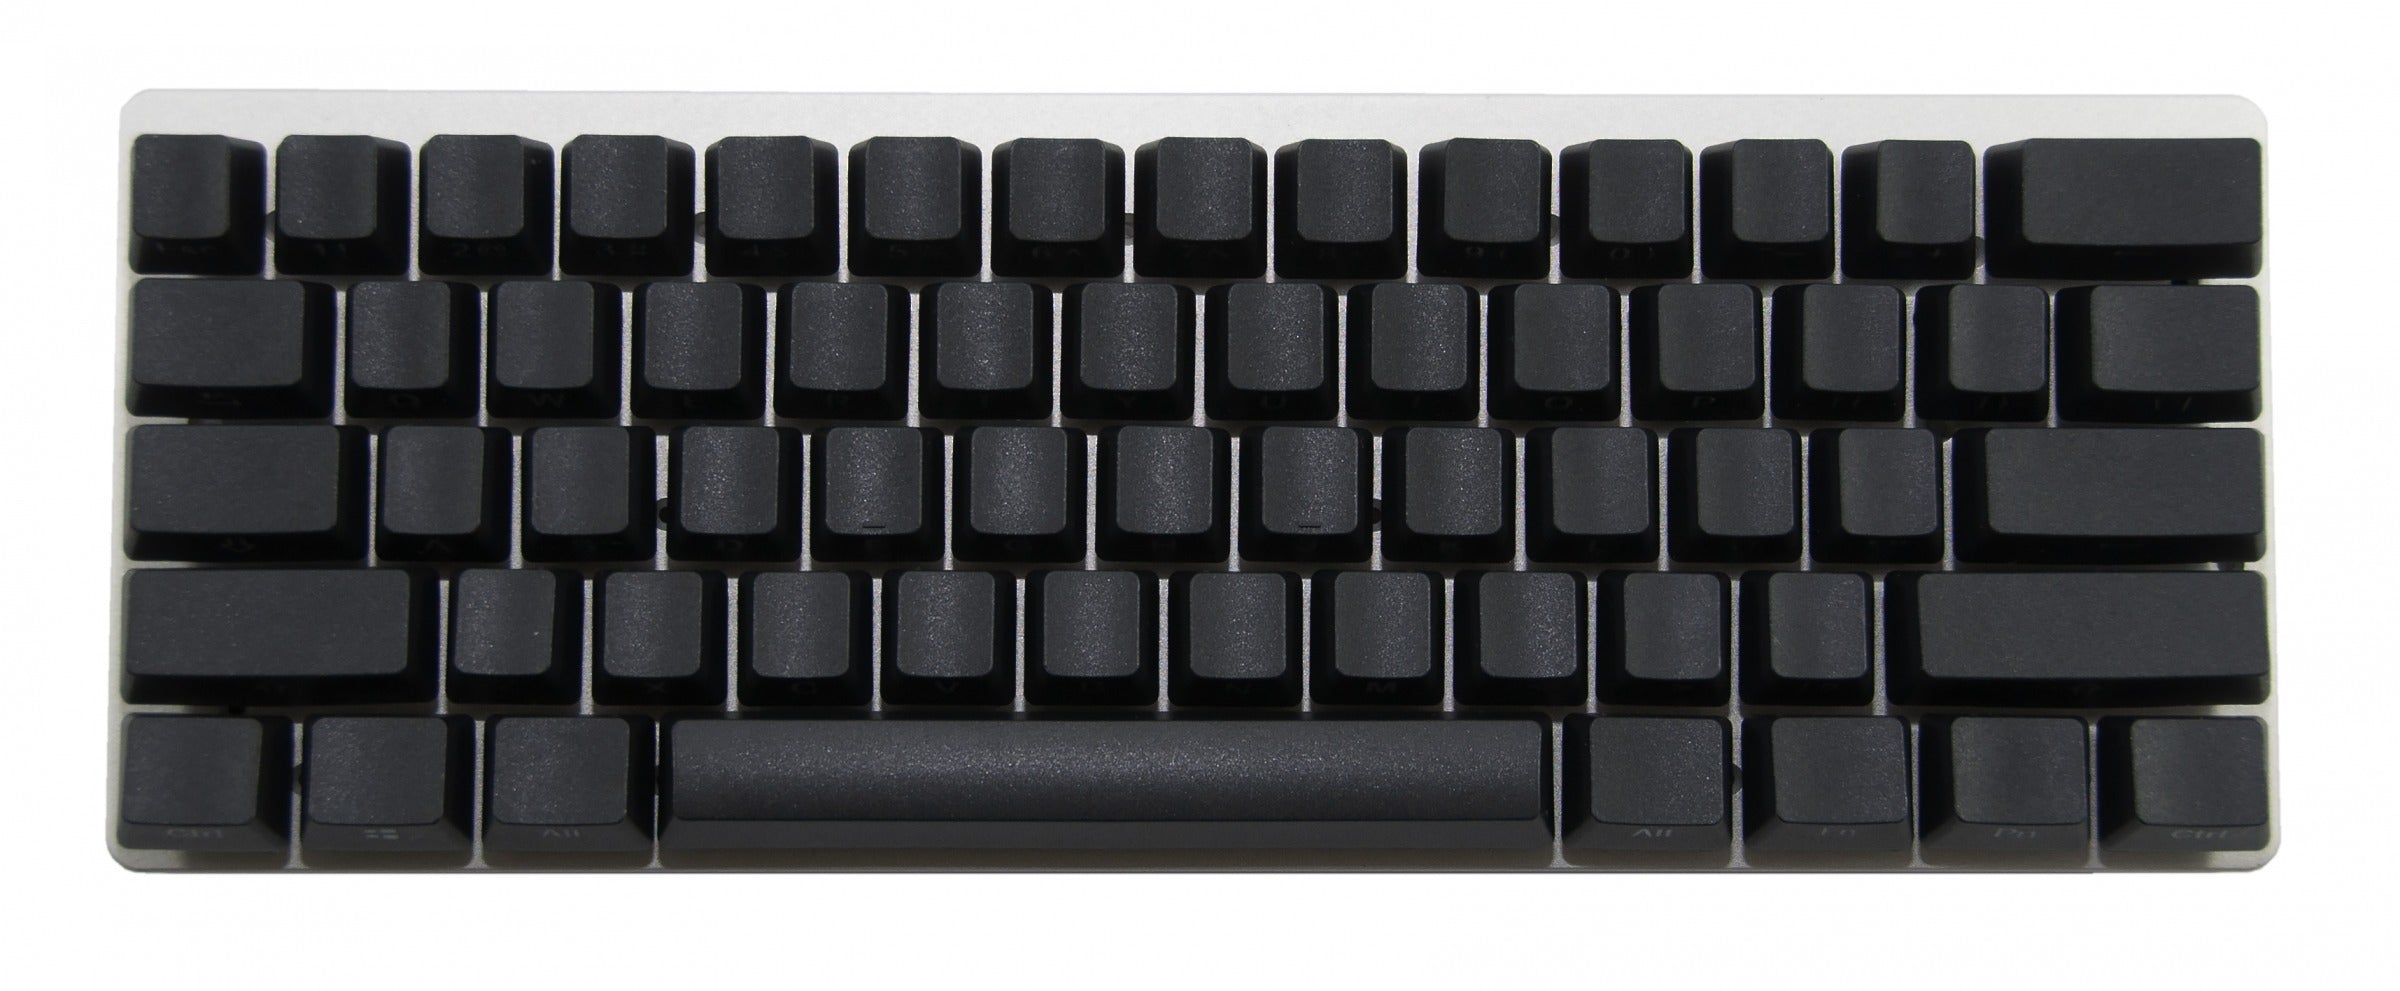 Vortex 10th Aniversary Edition RGB 60% Mechanical Keyboard